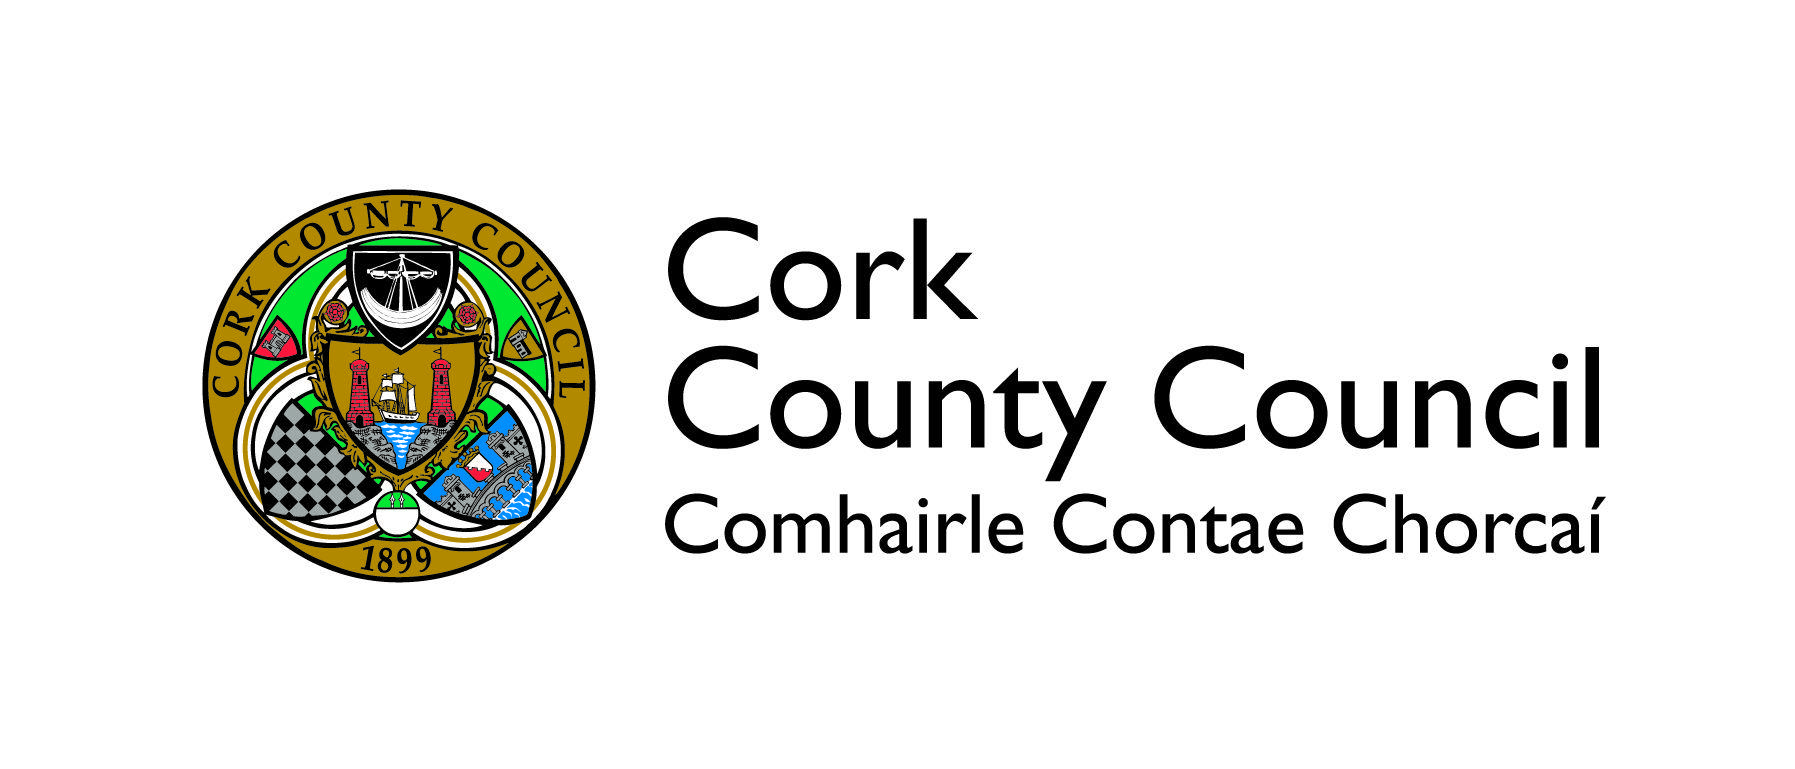 Council Logo - Cork County Council Logo